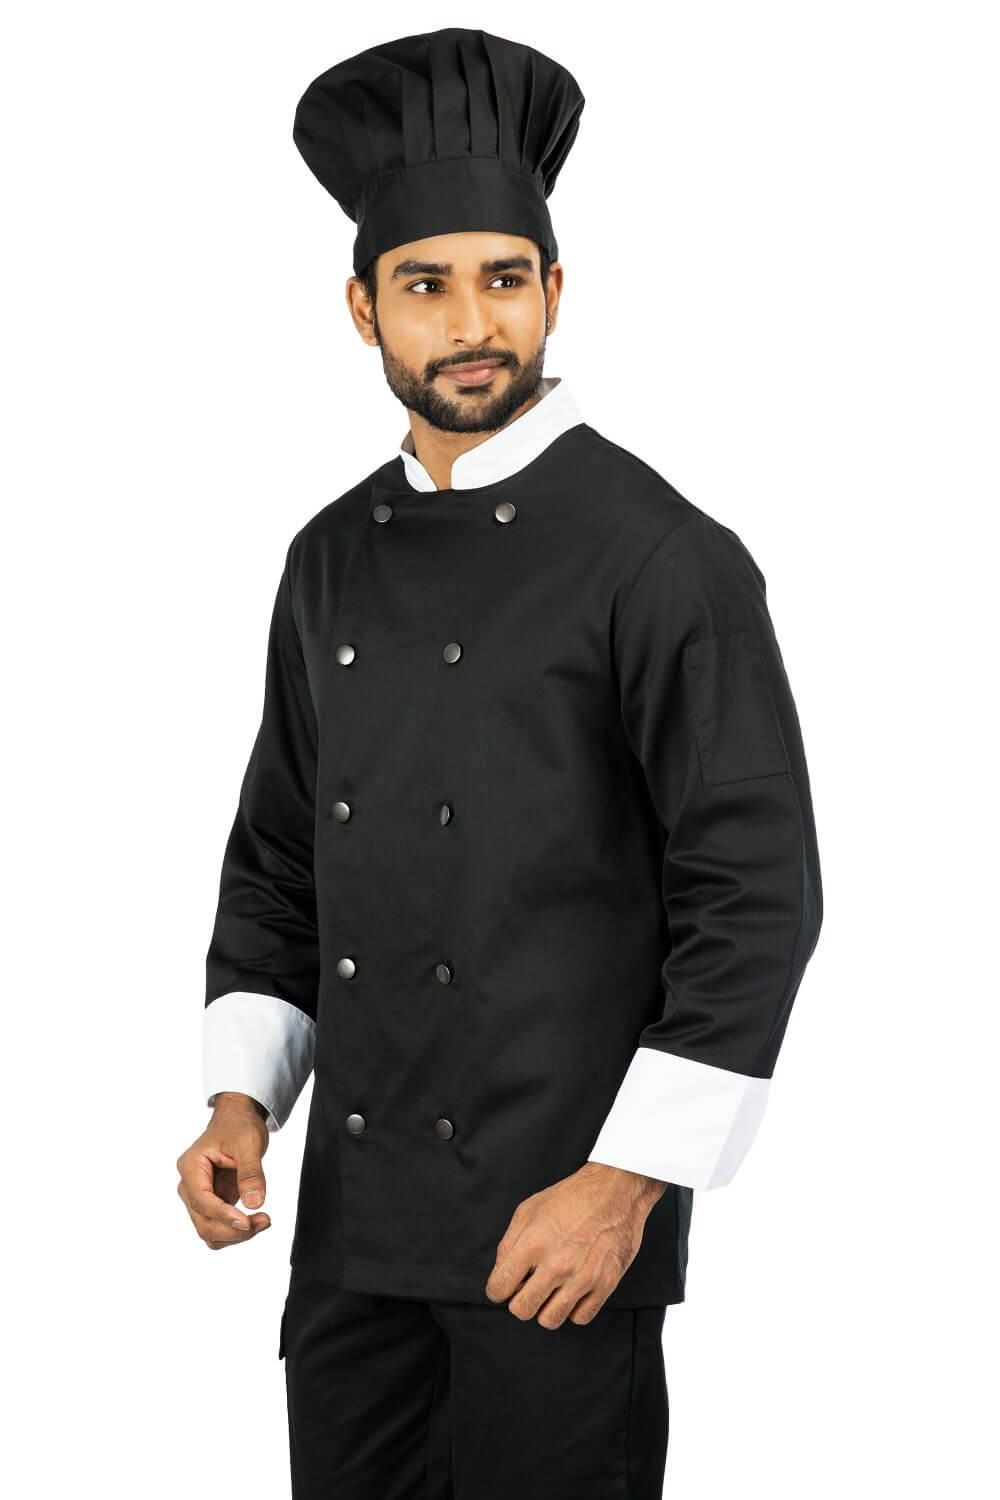 Black & White Cotton Blend Chef Coat